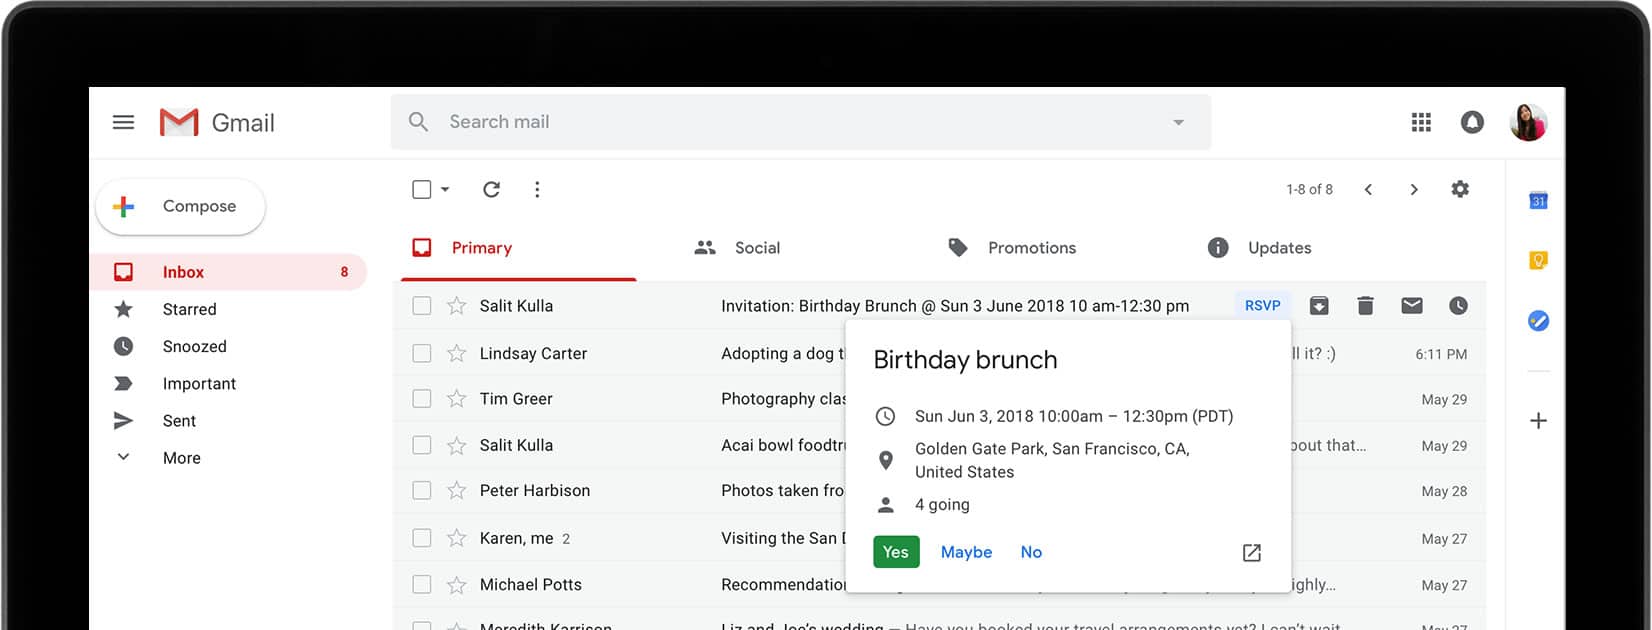 Falla de Google+ tiene repercusiones en Gmail y sus datos